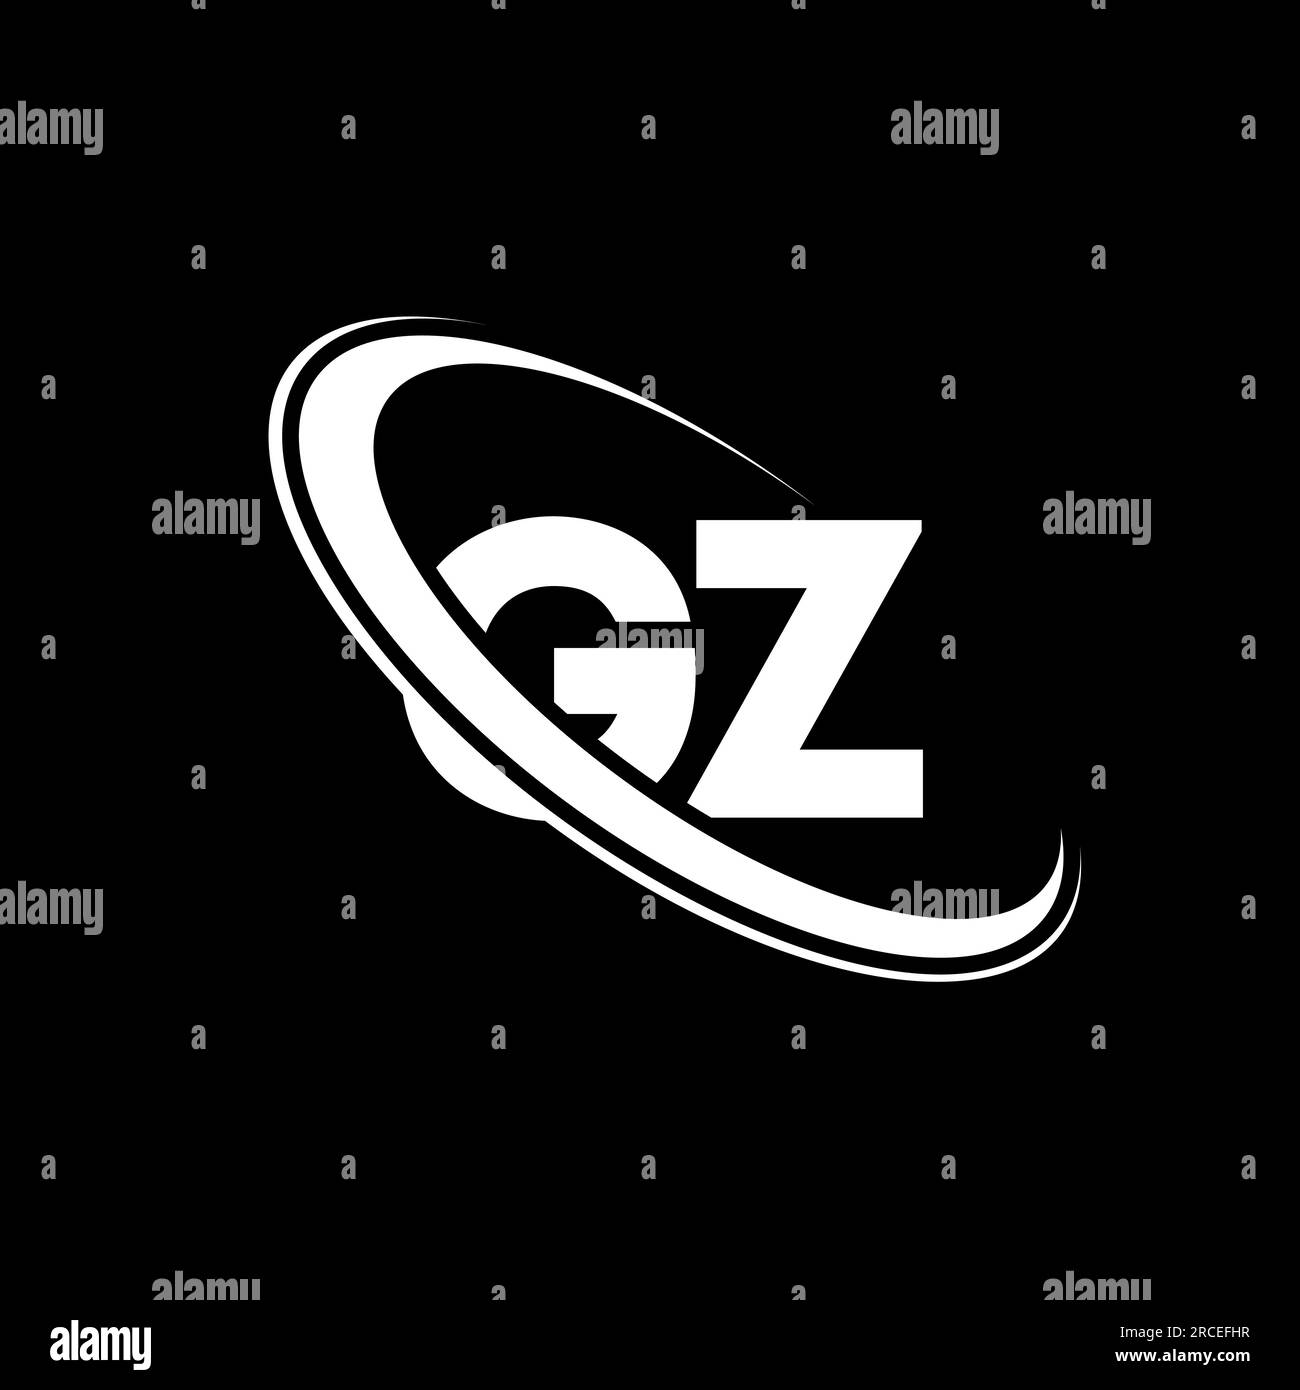 GZ logo. G Z design. White GZ letter. GZ/G Z letter logo design. Initial letter GZ linked circle uppercase monogram logo. Stock Vector